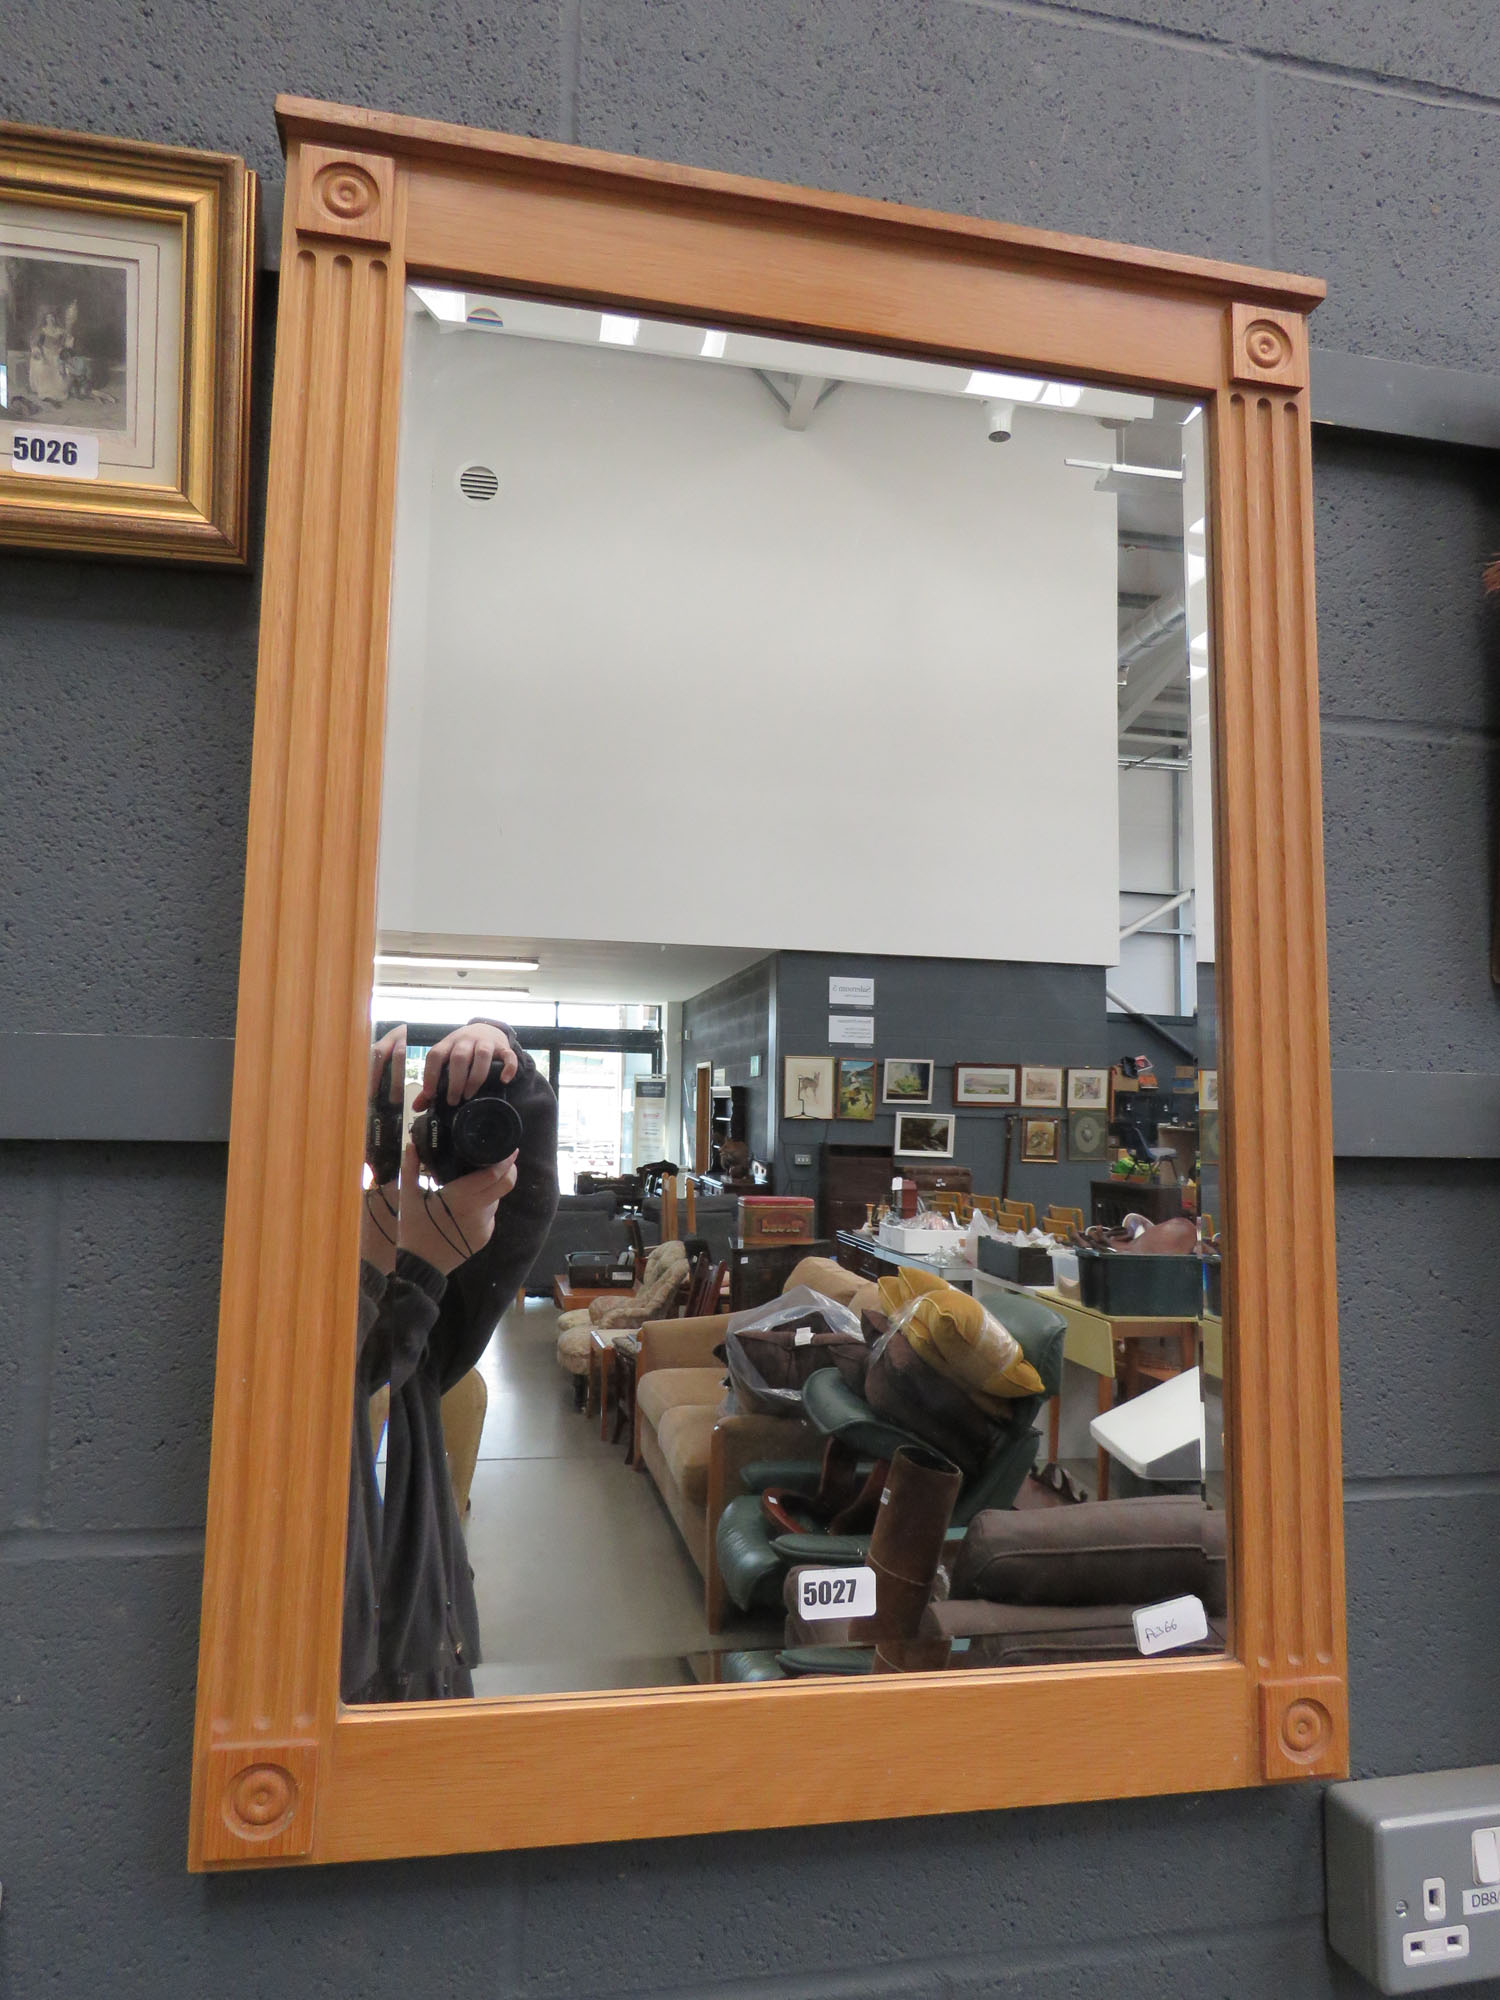 Rectangular bevelled mirror in oak frame